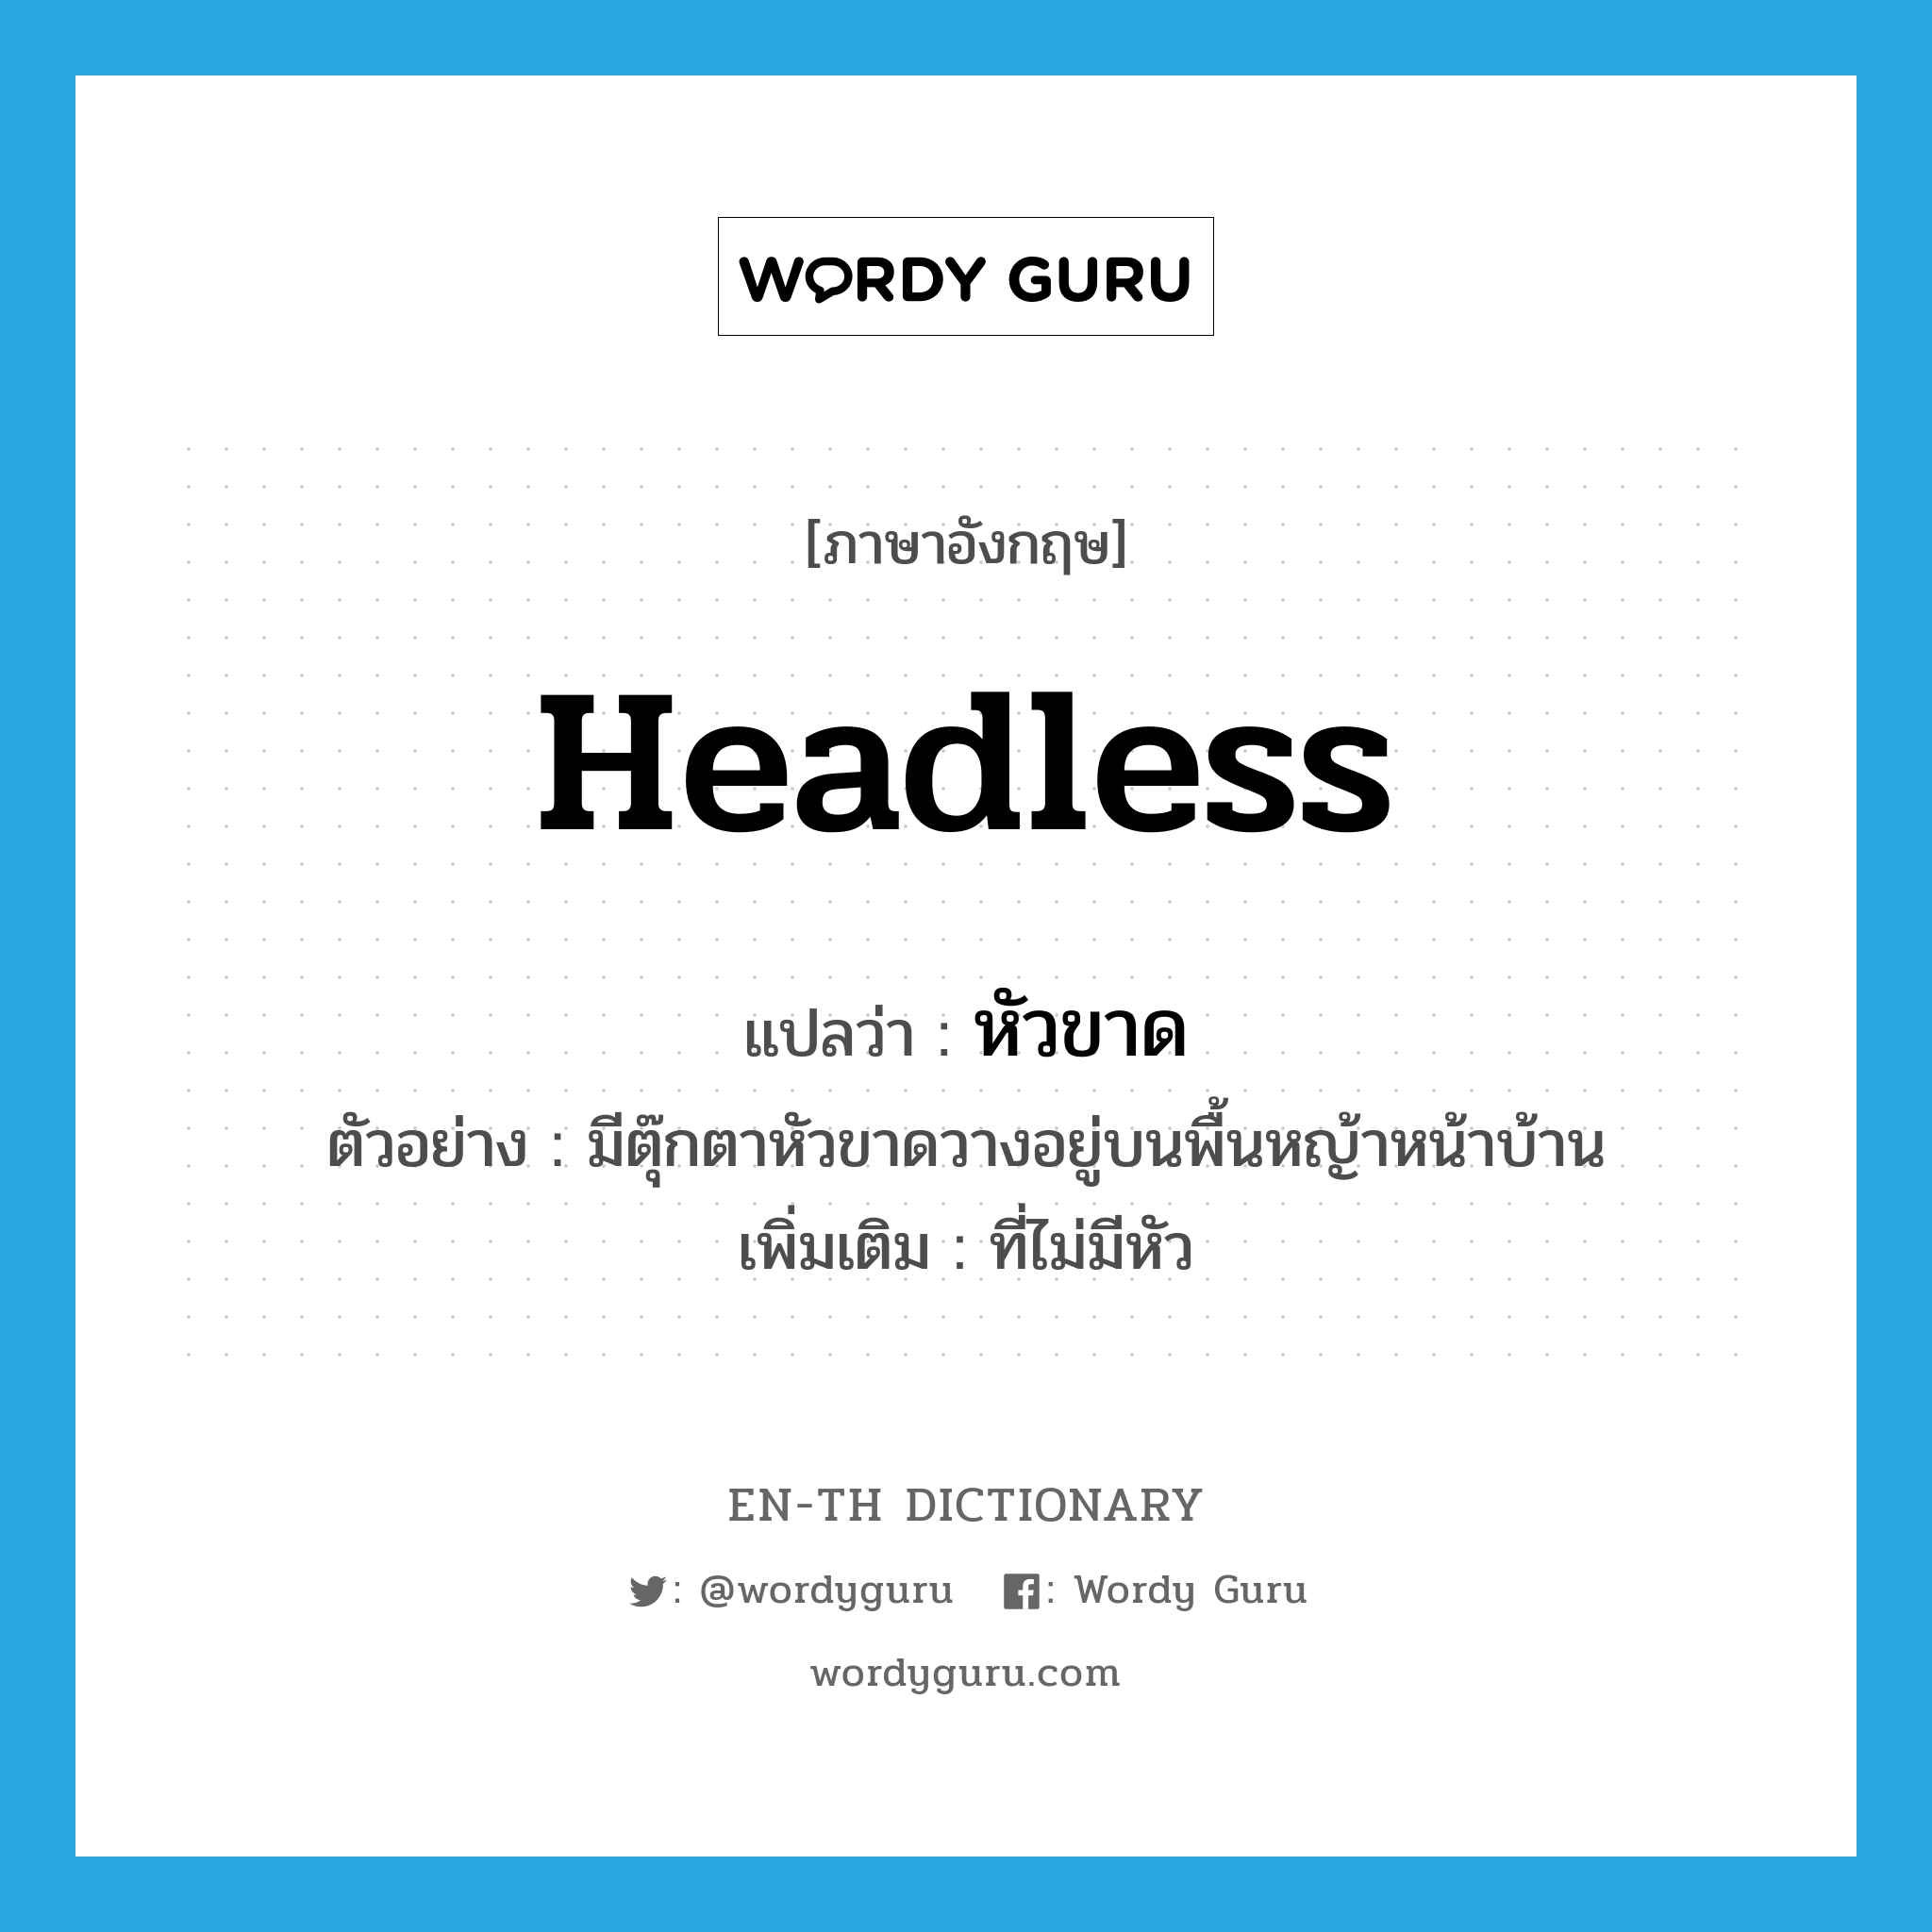 headless แปลว่า?, คำศัพท์ภาษาอังกฤษ headless แปลว่า หัวขาด ประเภท ADJ ตัวอย่าง มีตุ๊กตาหัวขาดวางอยู่บนพื้นหญ้าหน้าบ้าน เพิ่มเติม ที่ไม่มีหัว หมวด ADJ